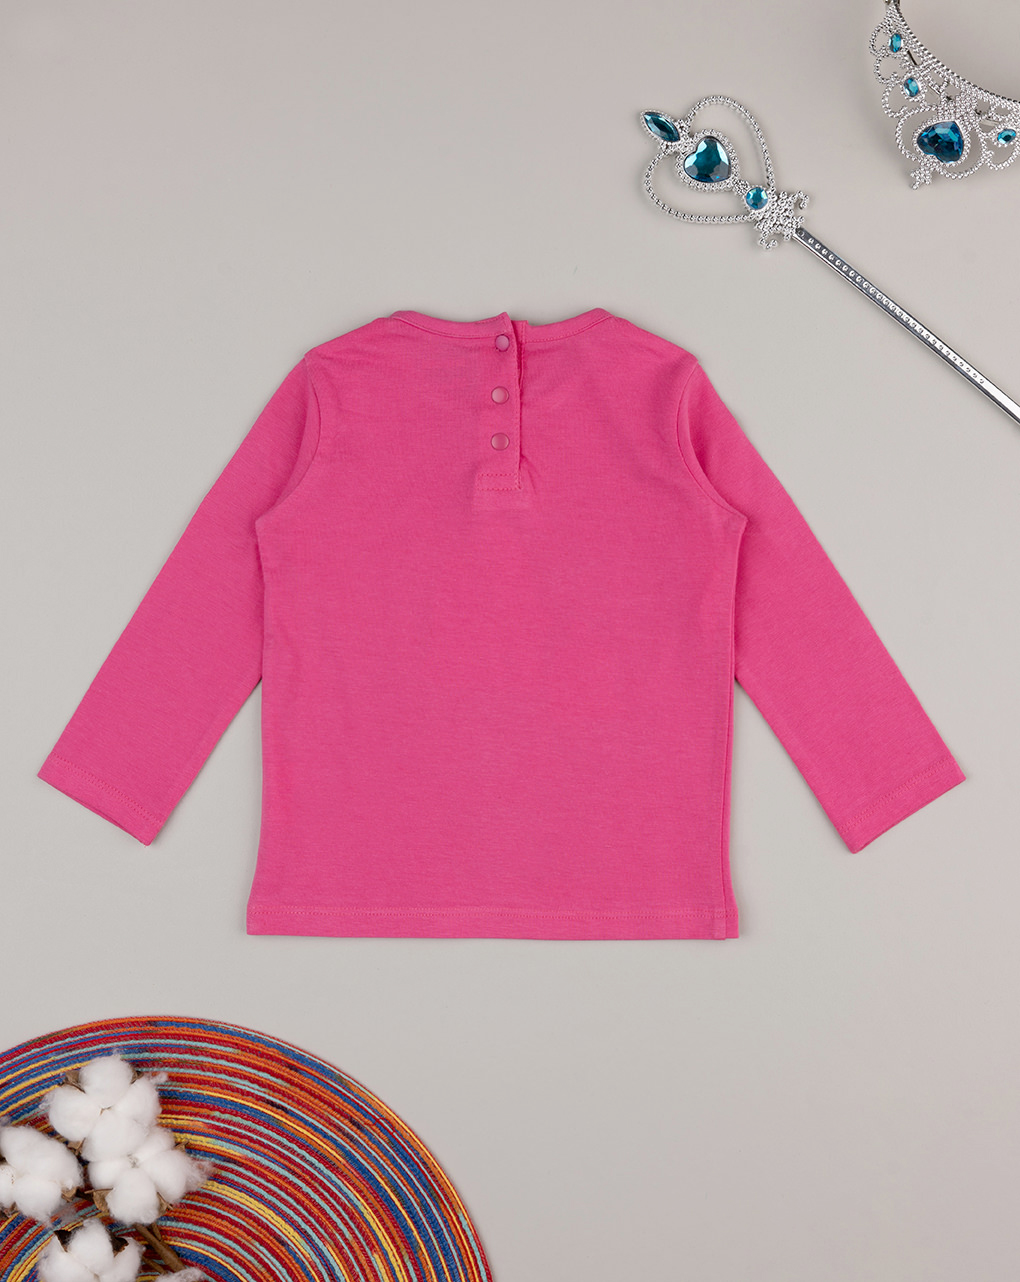 βρεφική μπλούζα φούξια με μονόκερους για κορίτσι - Prénatal